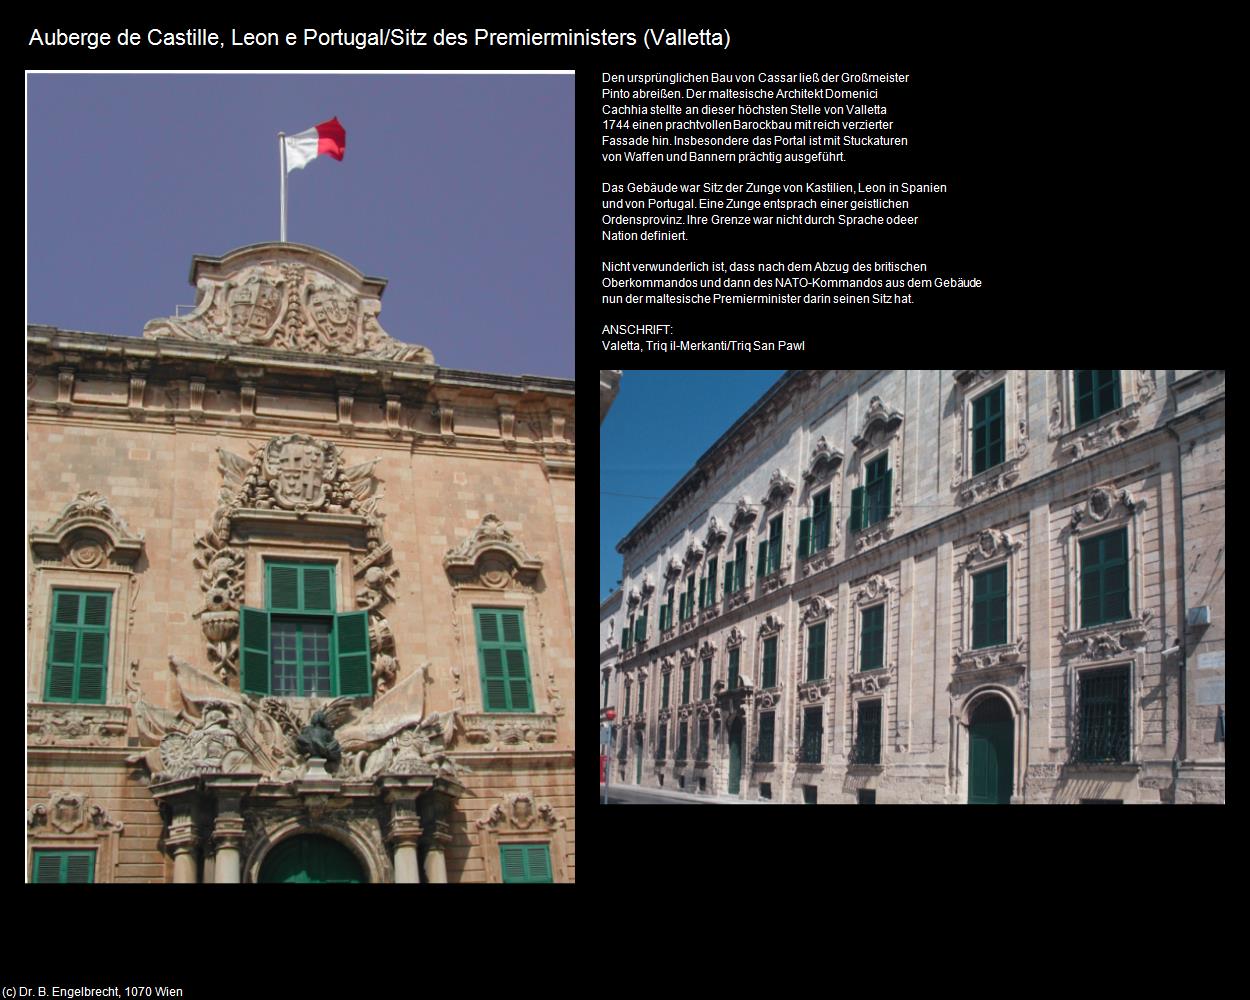 Auberge de Castille-Leon-Portugal/Sitz des Premierminsters (Valletta auf Malta) in Malta - Perle im Mittelmeer